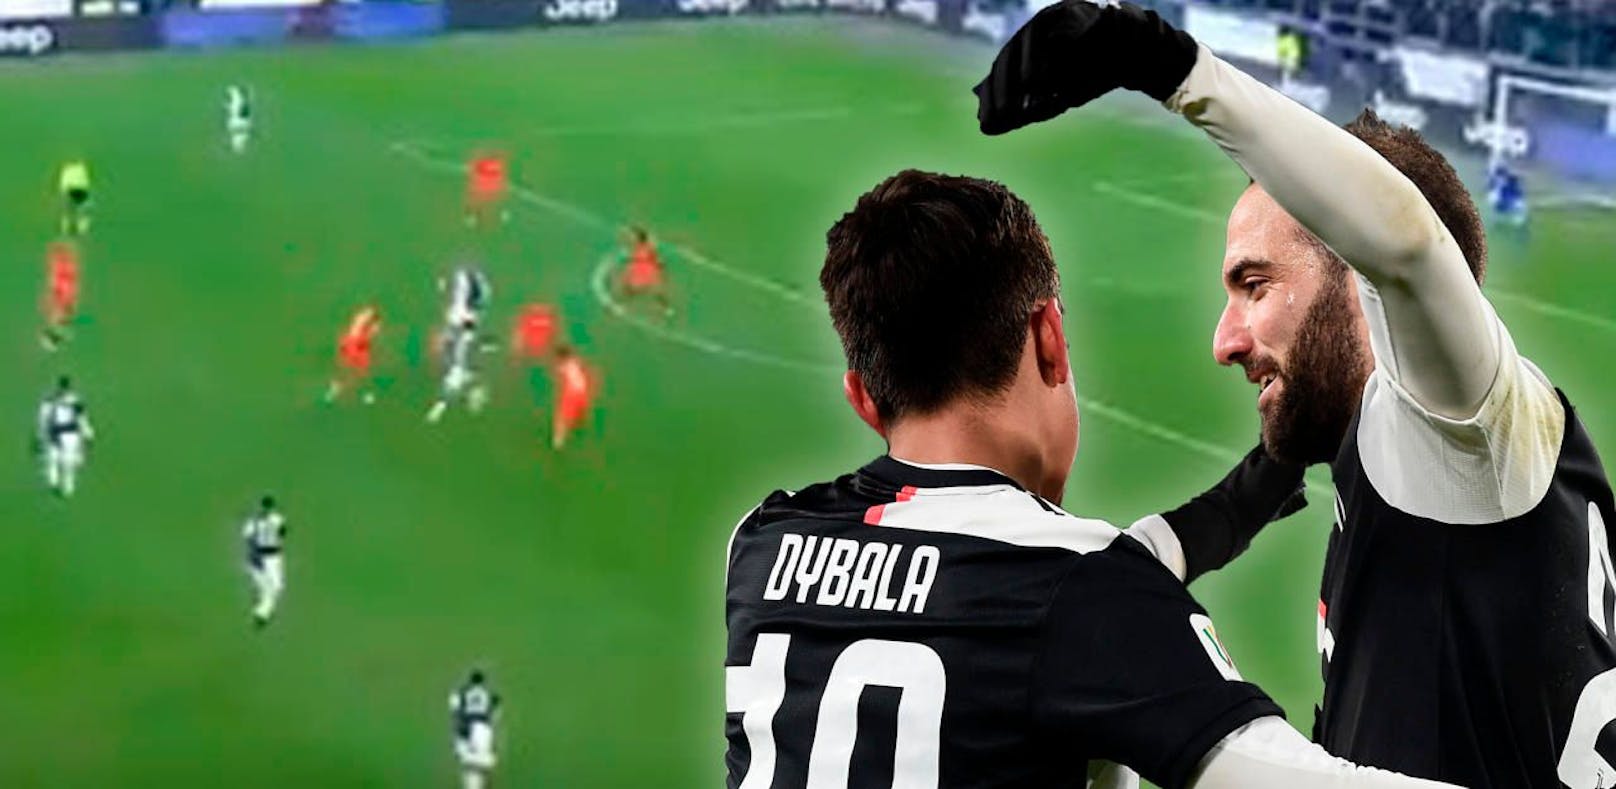 Paolo Dybala und Gonzalo Higuain spielen den gesamten Abwehrblock mit Kurzpassspiel zu zweit aus.